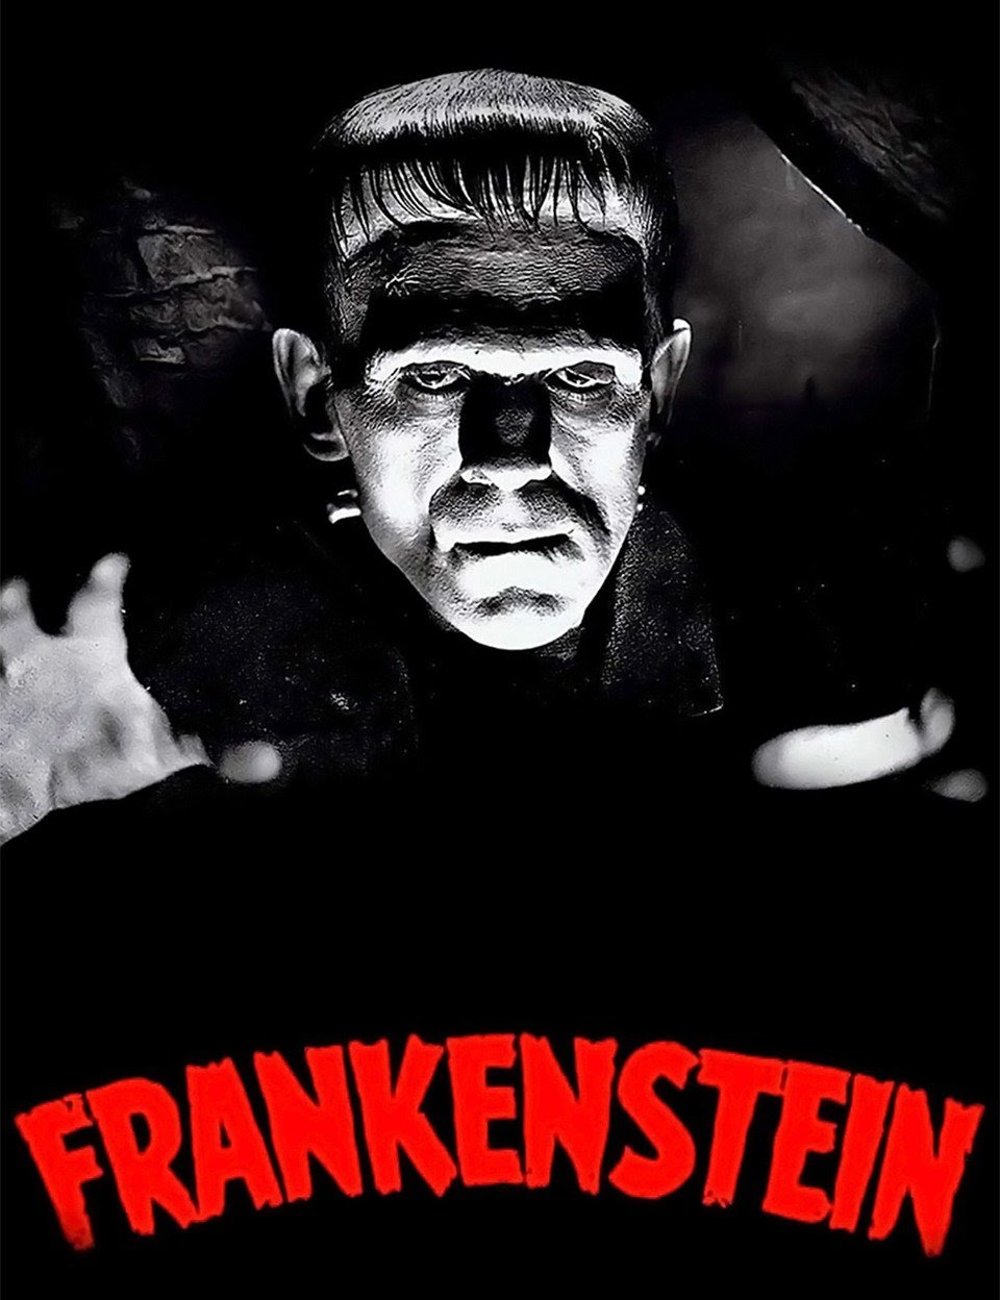 Frankenstein - filme - filmes baseados em livros - dicas - halloween - https://stealthelook.com.br